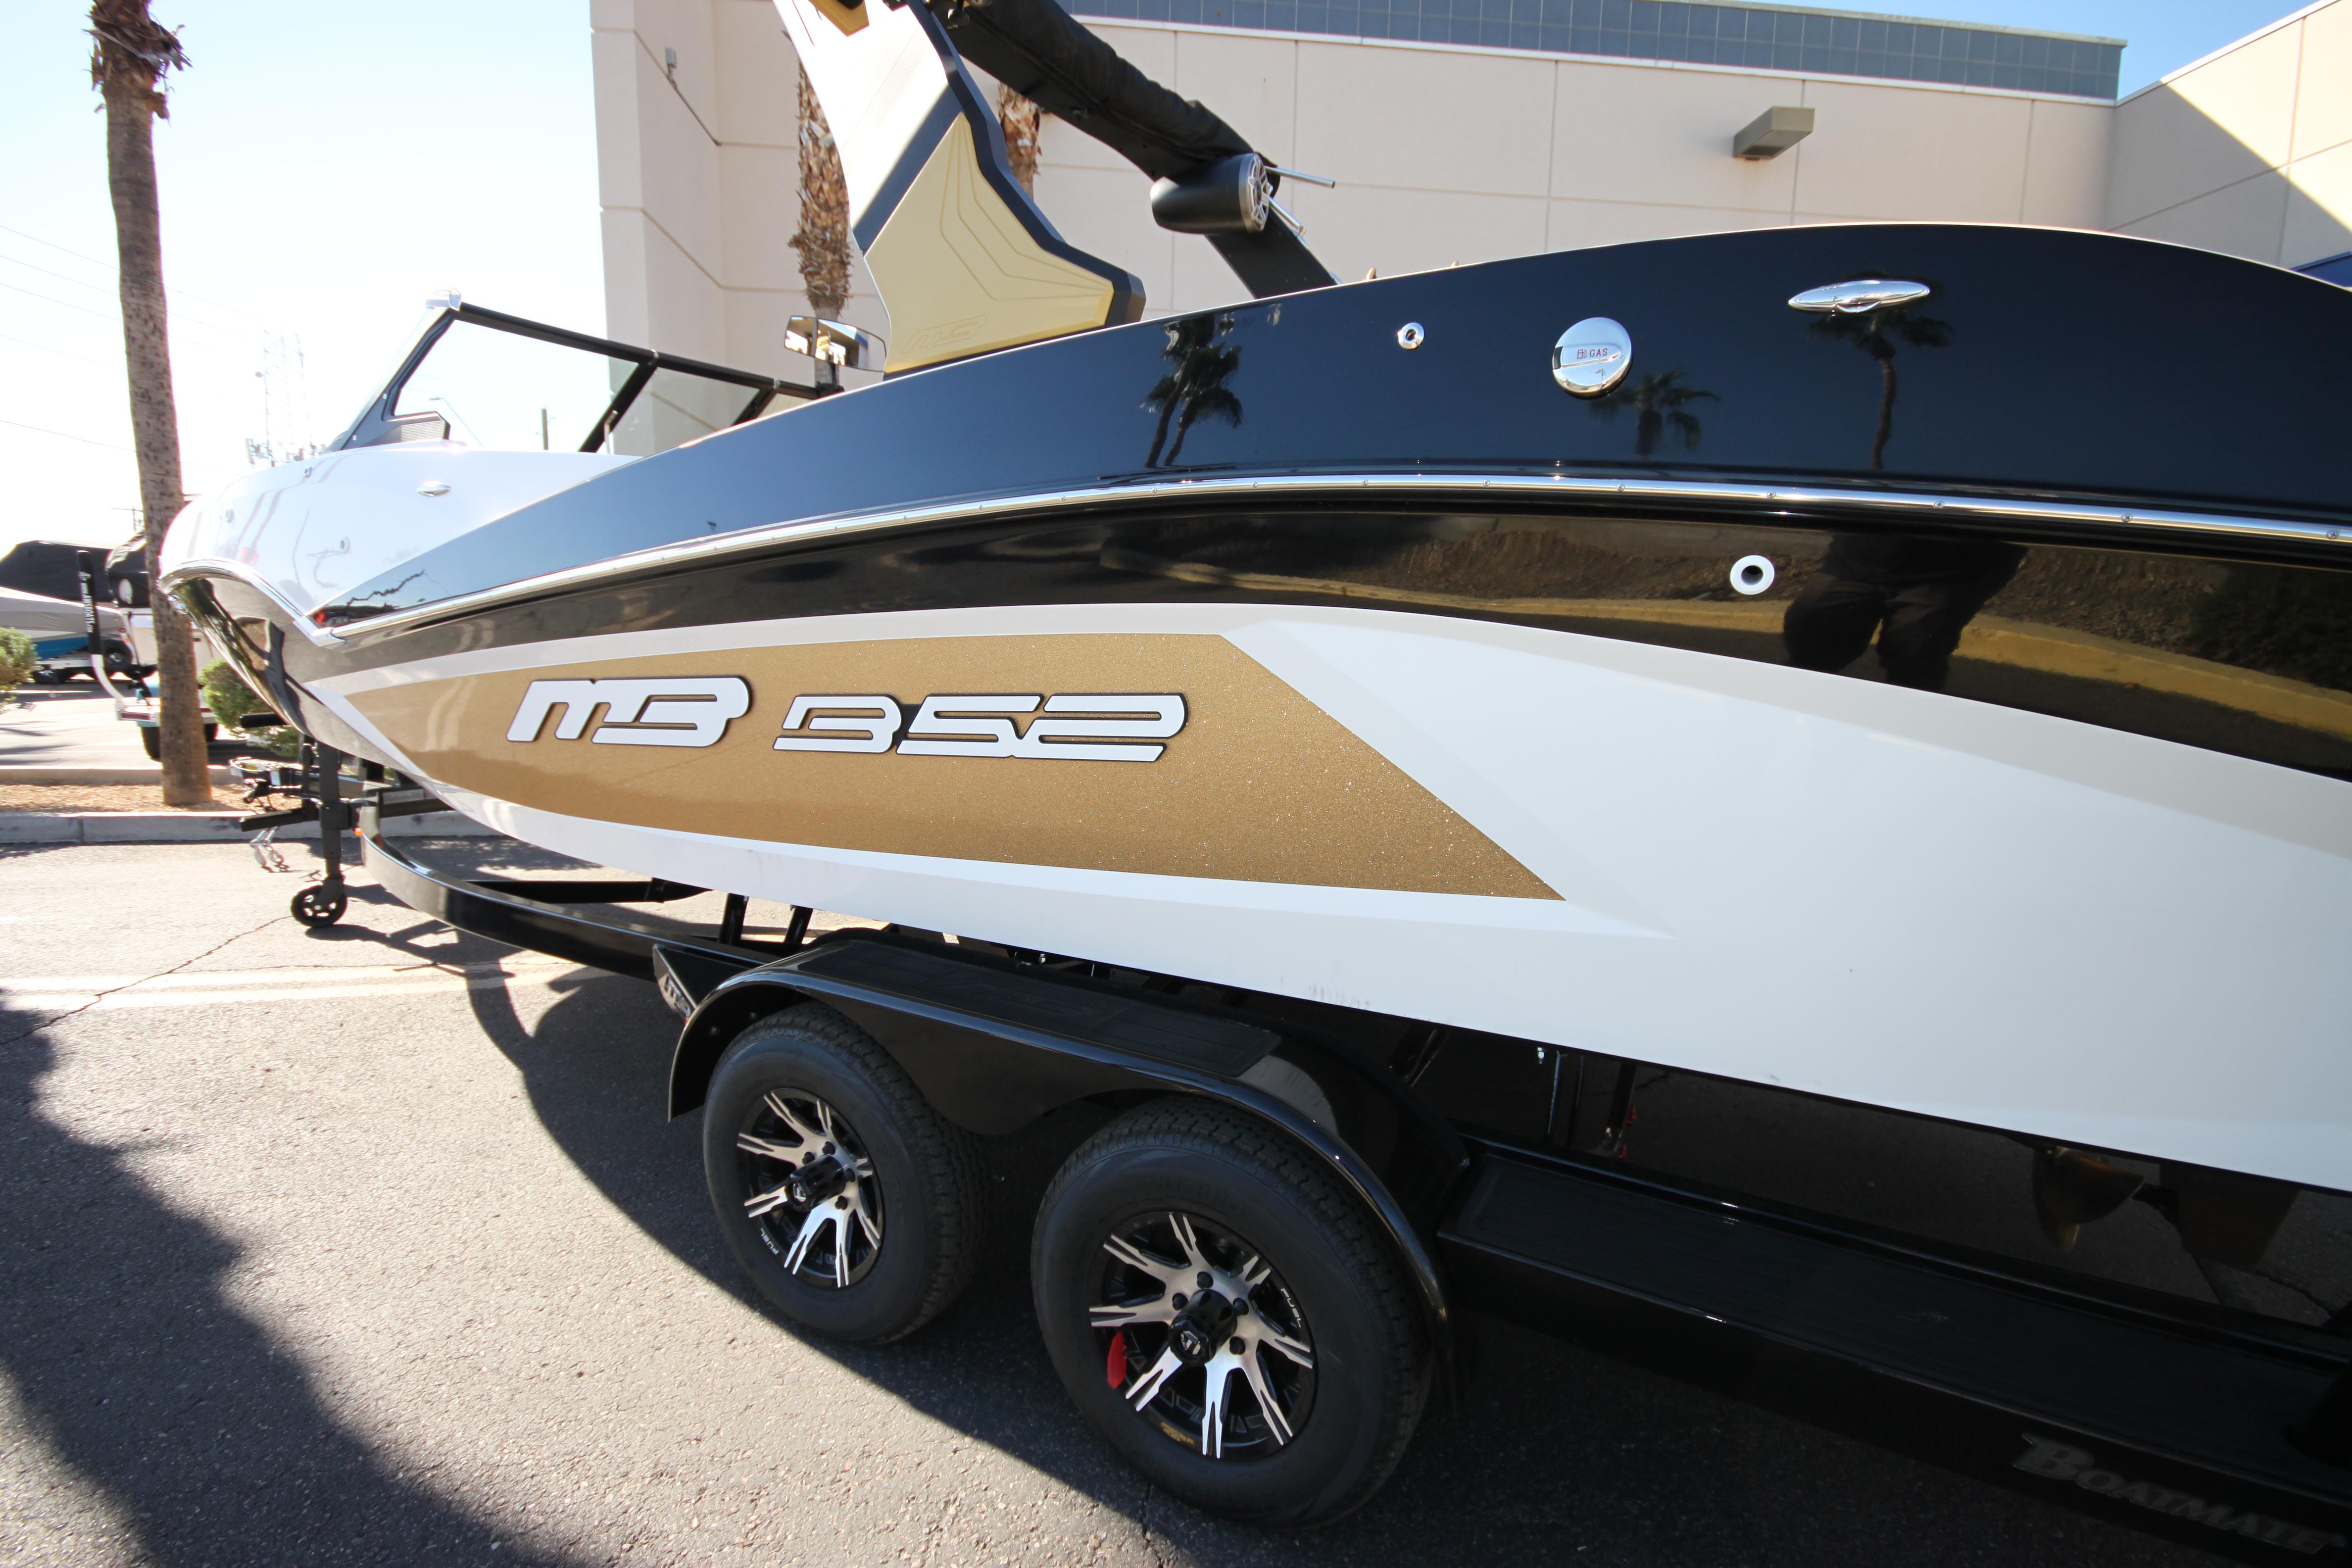 2024 MB B52 23 Alpha, Mesa Arizona - boats.com